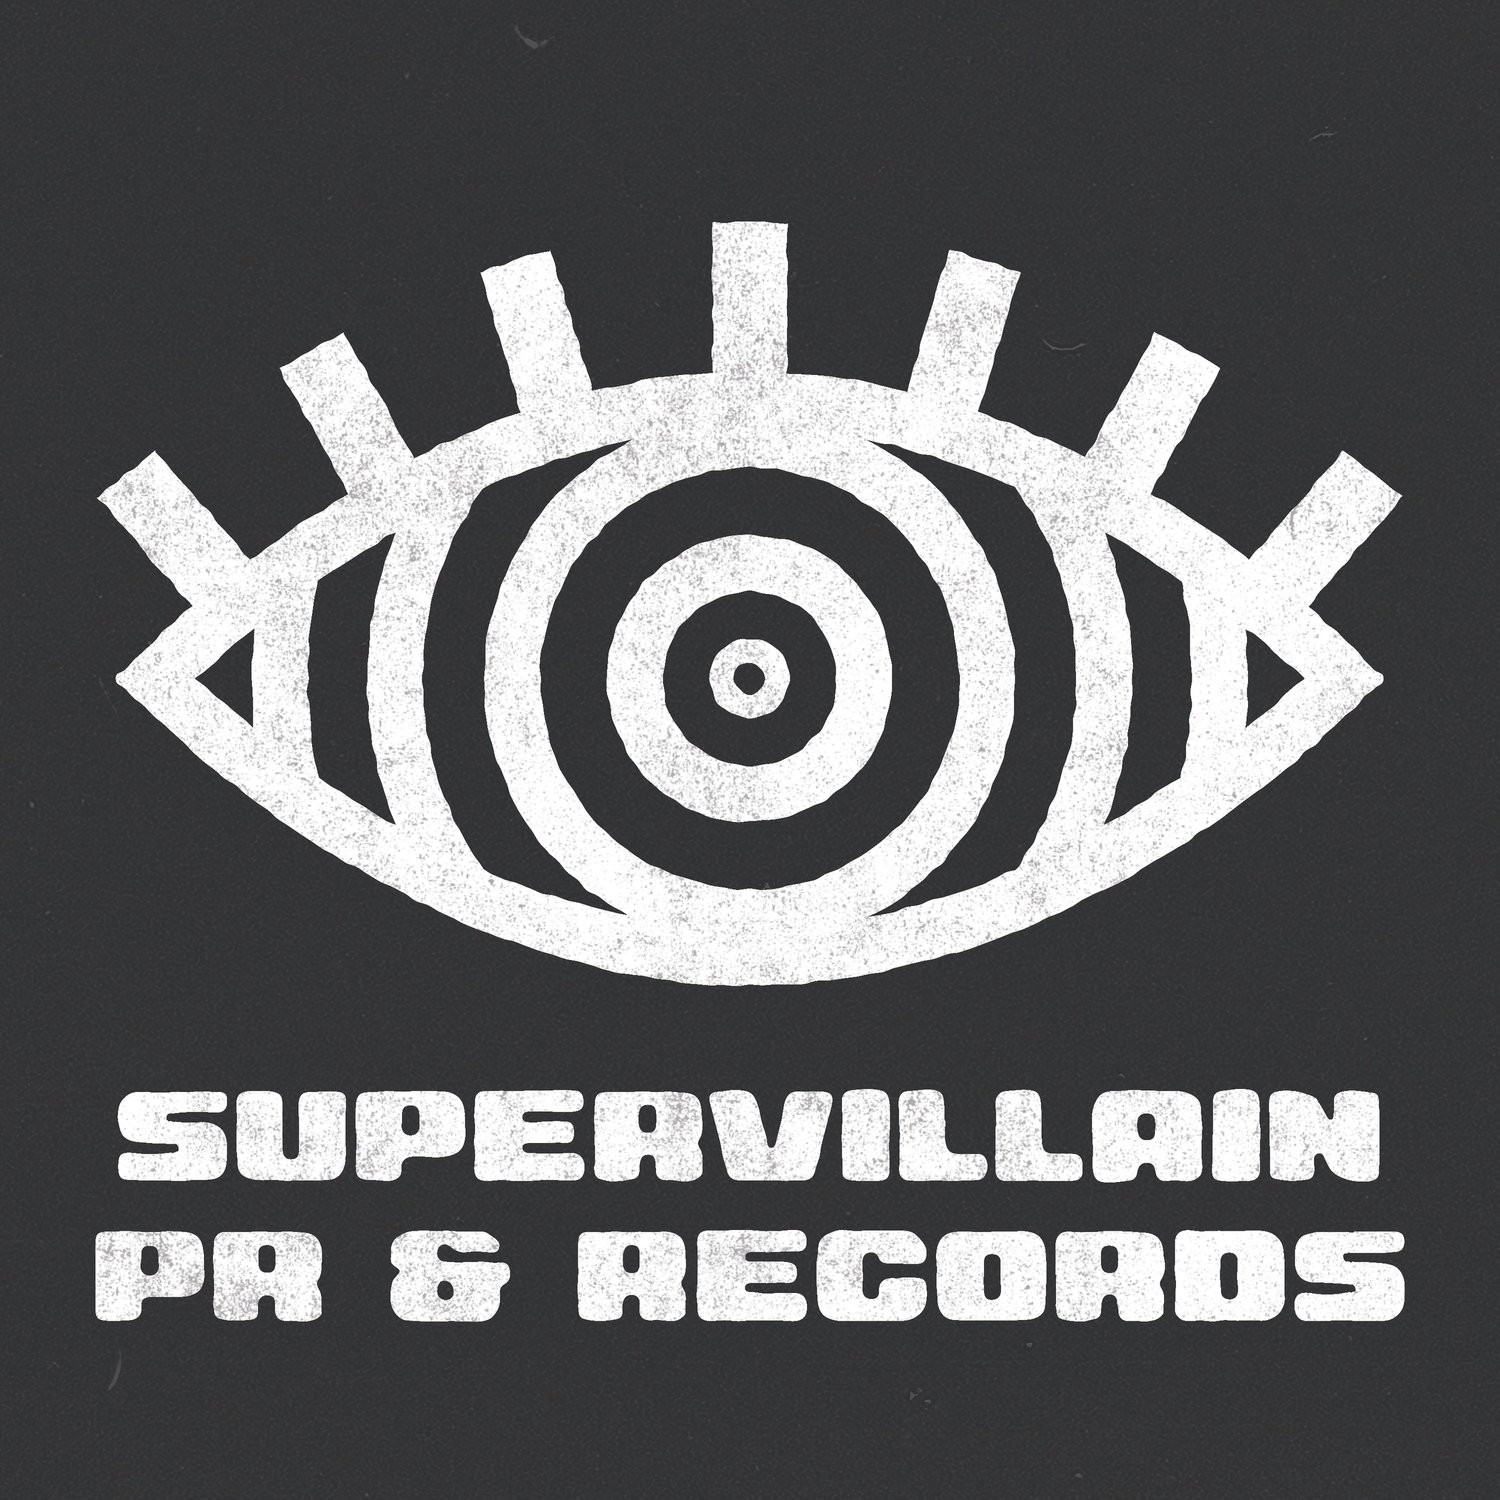 www.supervillainpr.com